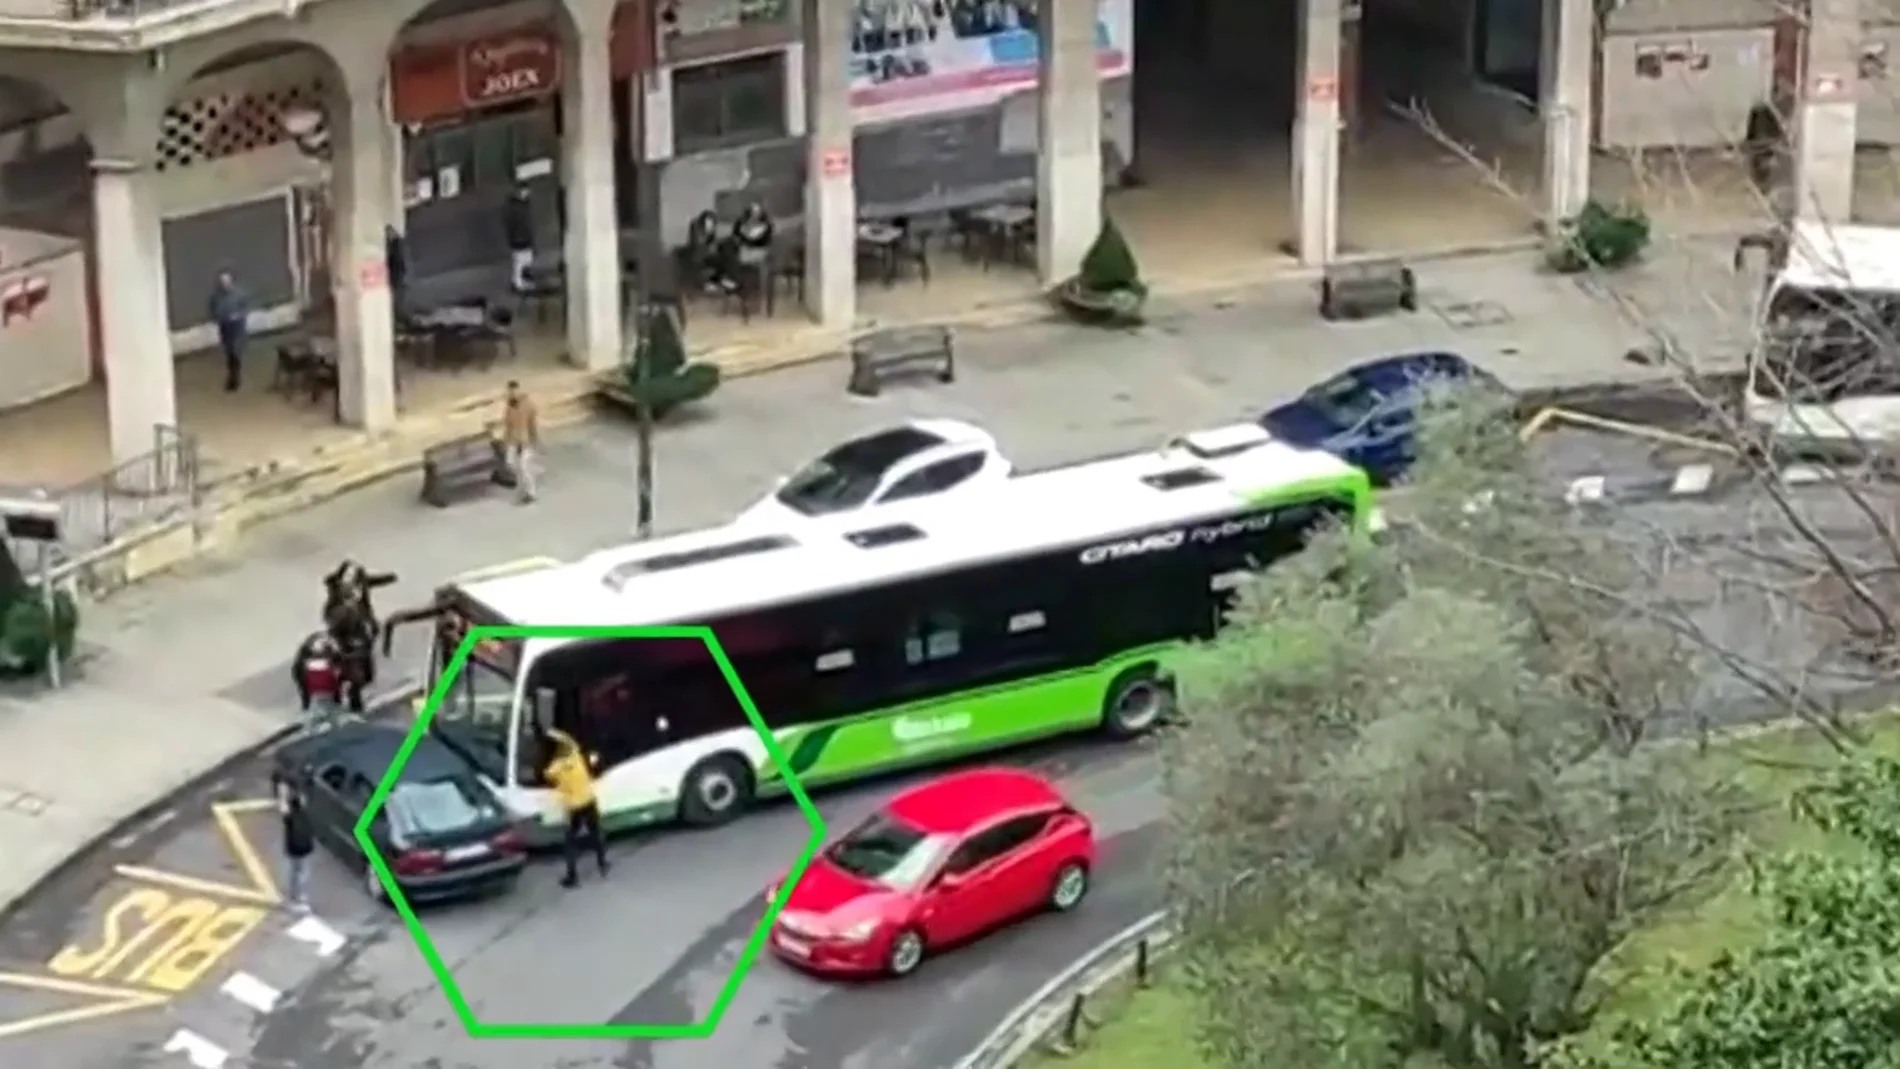 A puñetazo limpio: así acaban el conductor de un turismo y el de un autobús tras un incidente en Bilbao